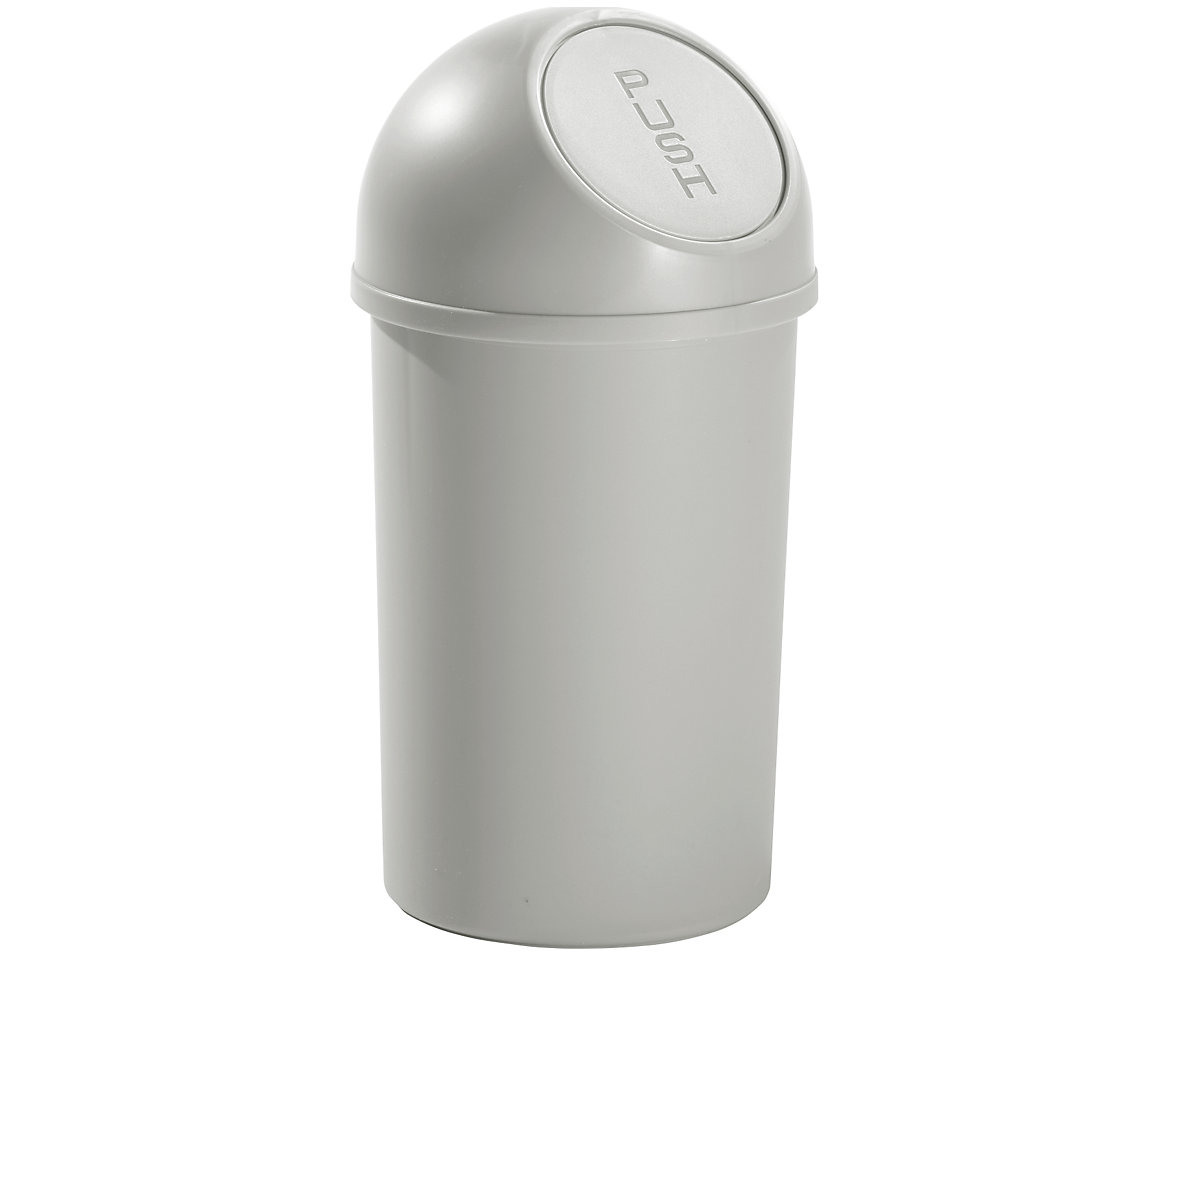 Plastični spremnik za otpad s otvaranjem na pritisak – helit